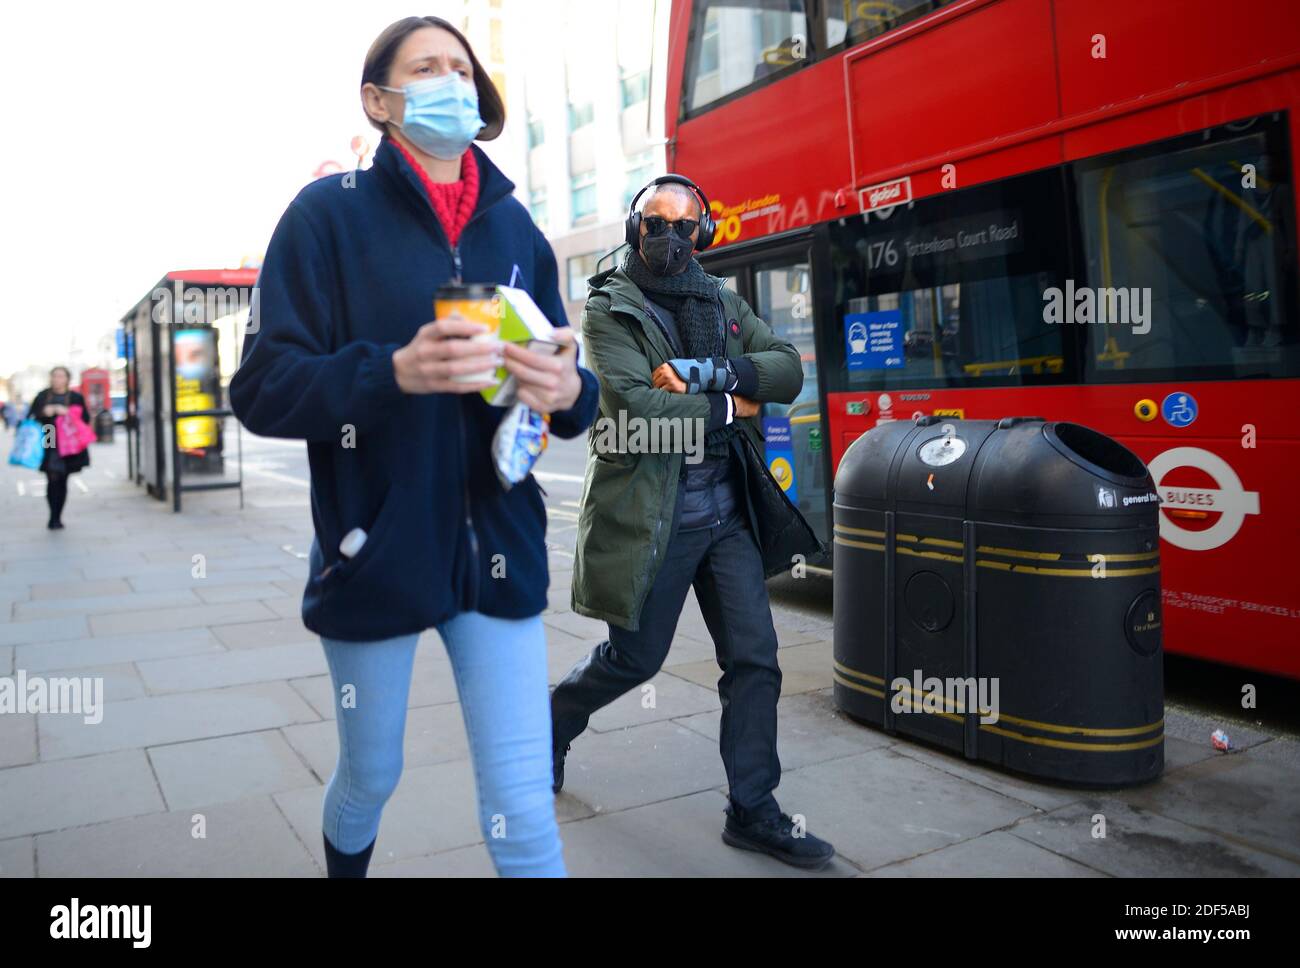 Londra, Inghilterra, Regno Unito. Persone che indossano maschere facciali durante la pandemia COVID, 2020 Foto Stock